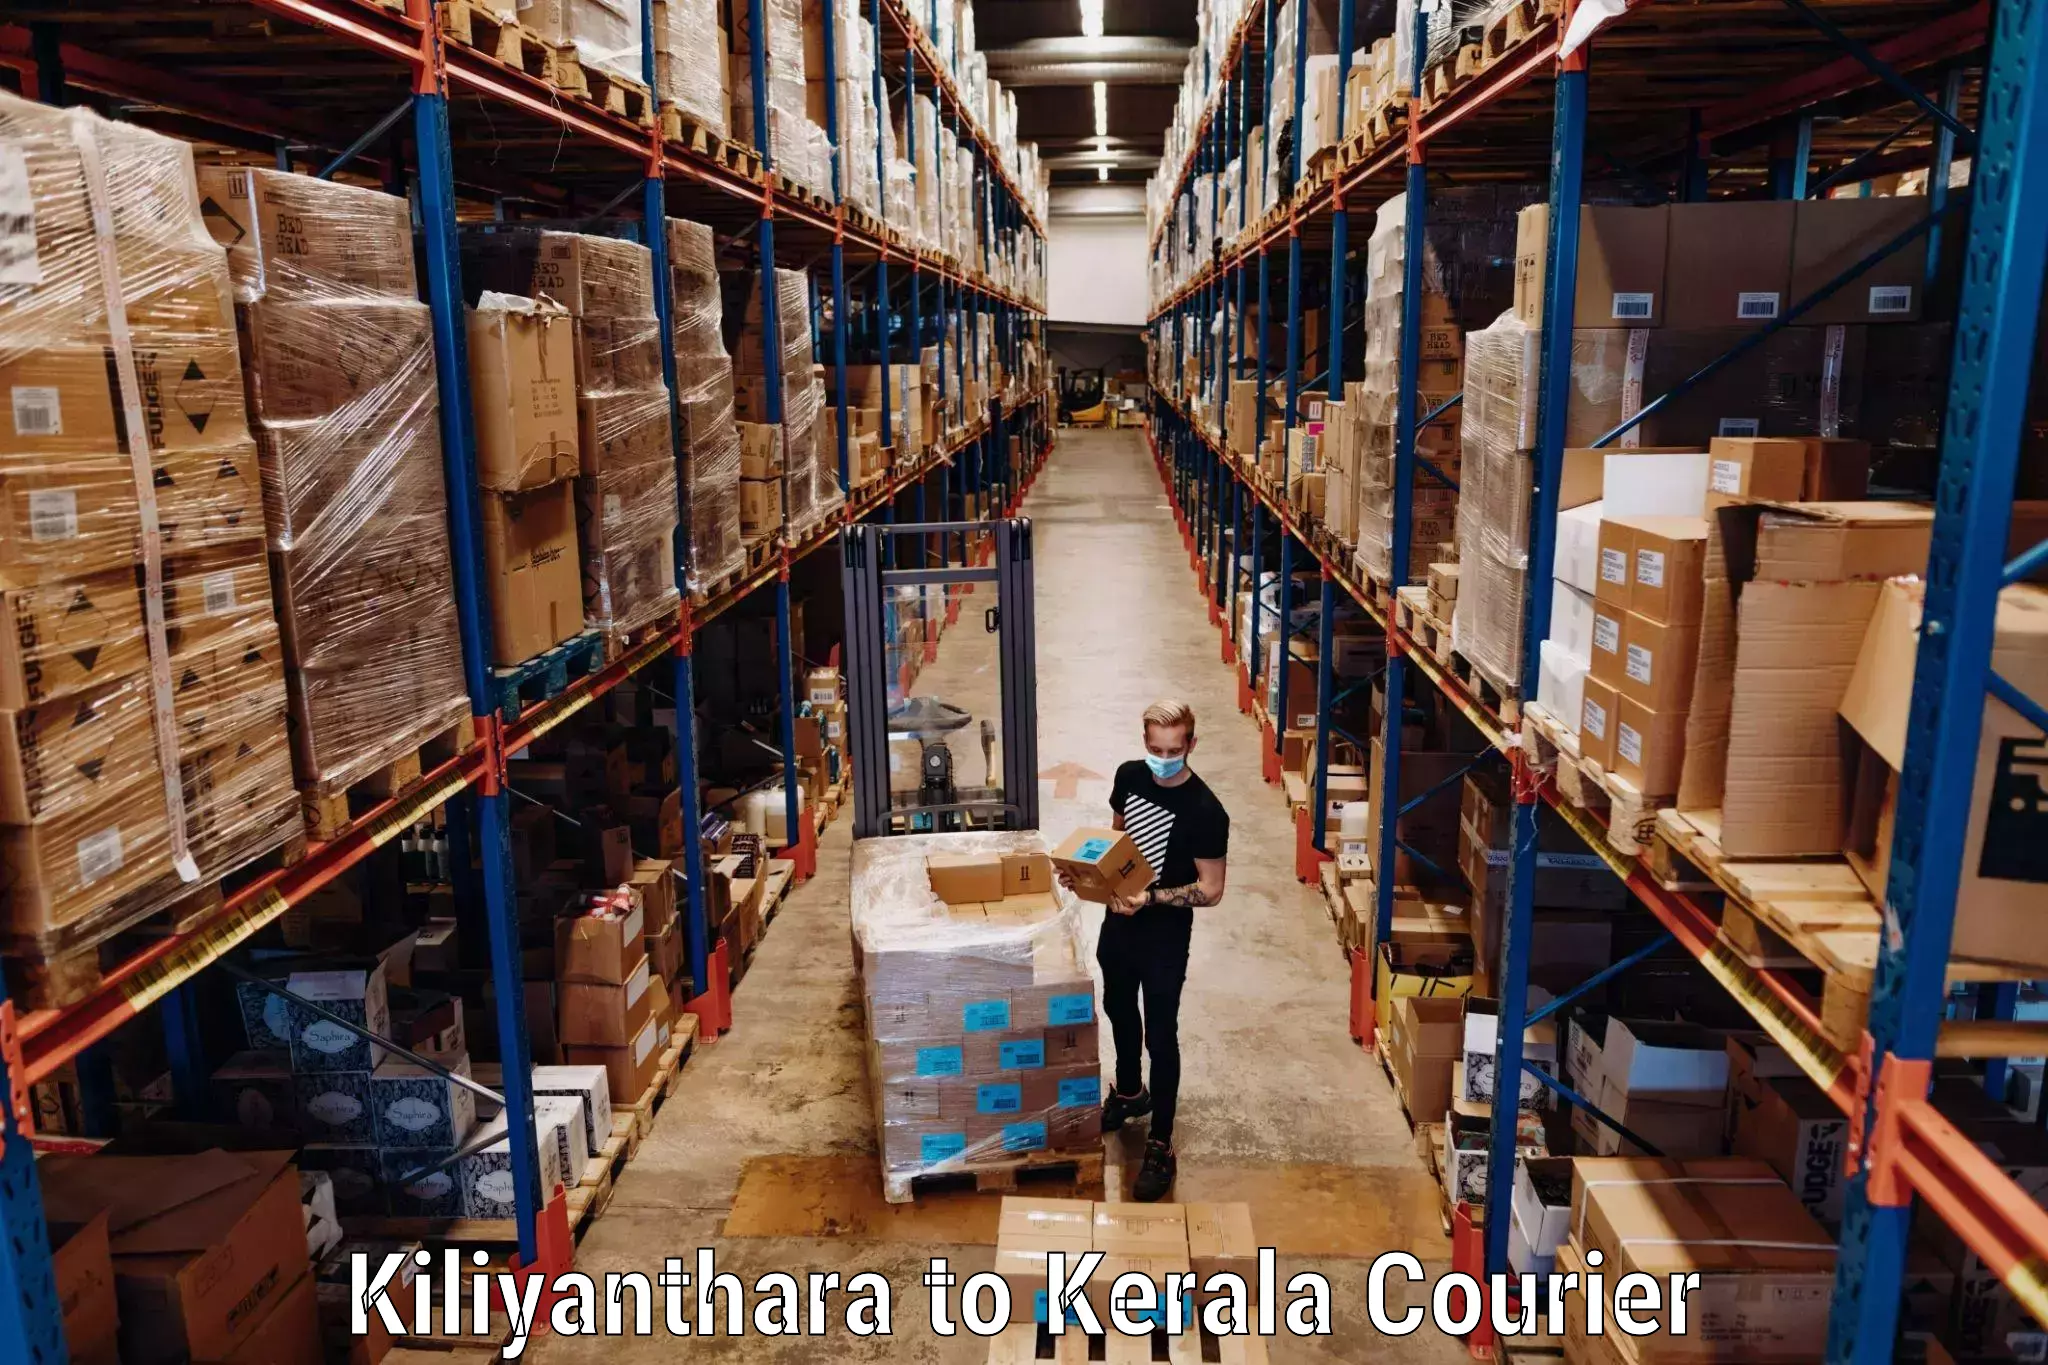 Baggage shipping advice in Kiliyanthara to Irinjalakuda